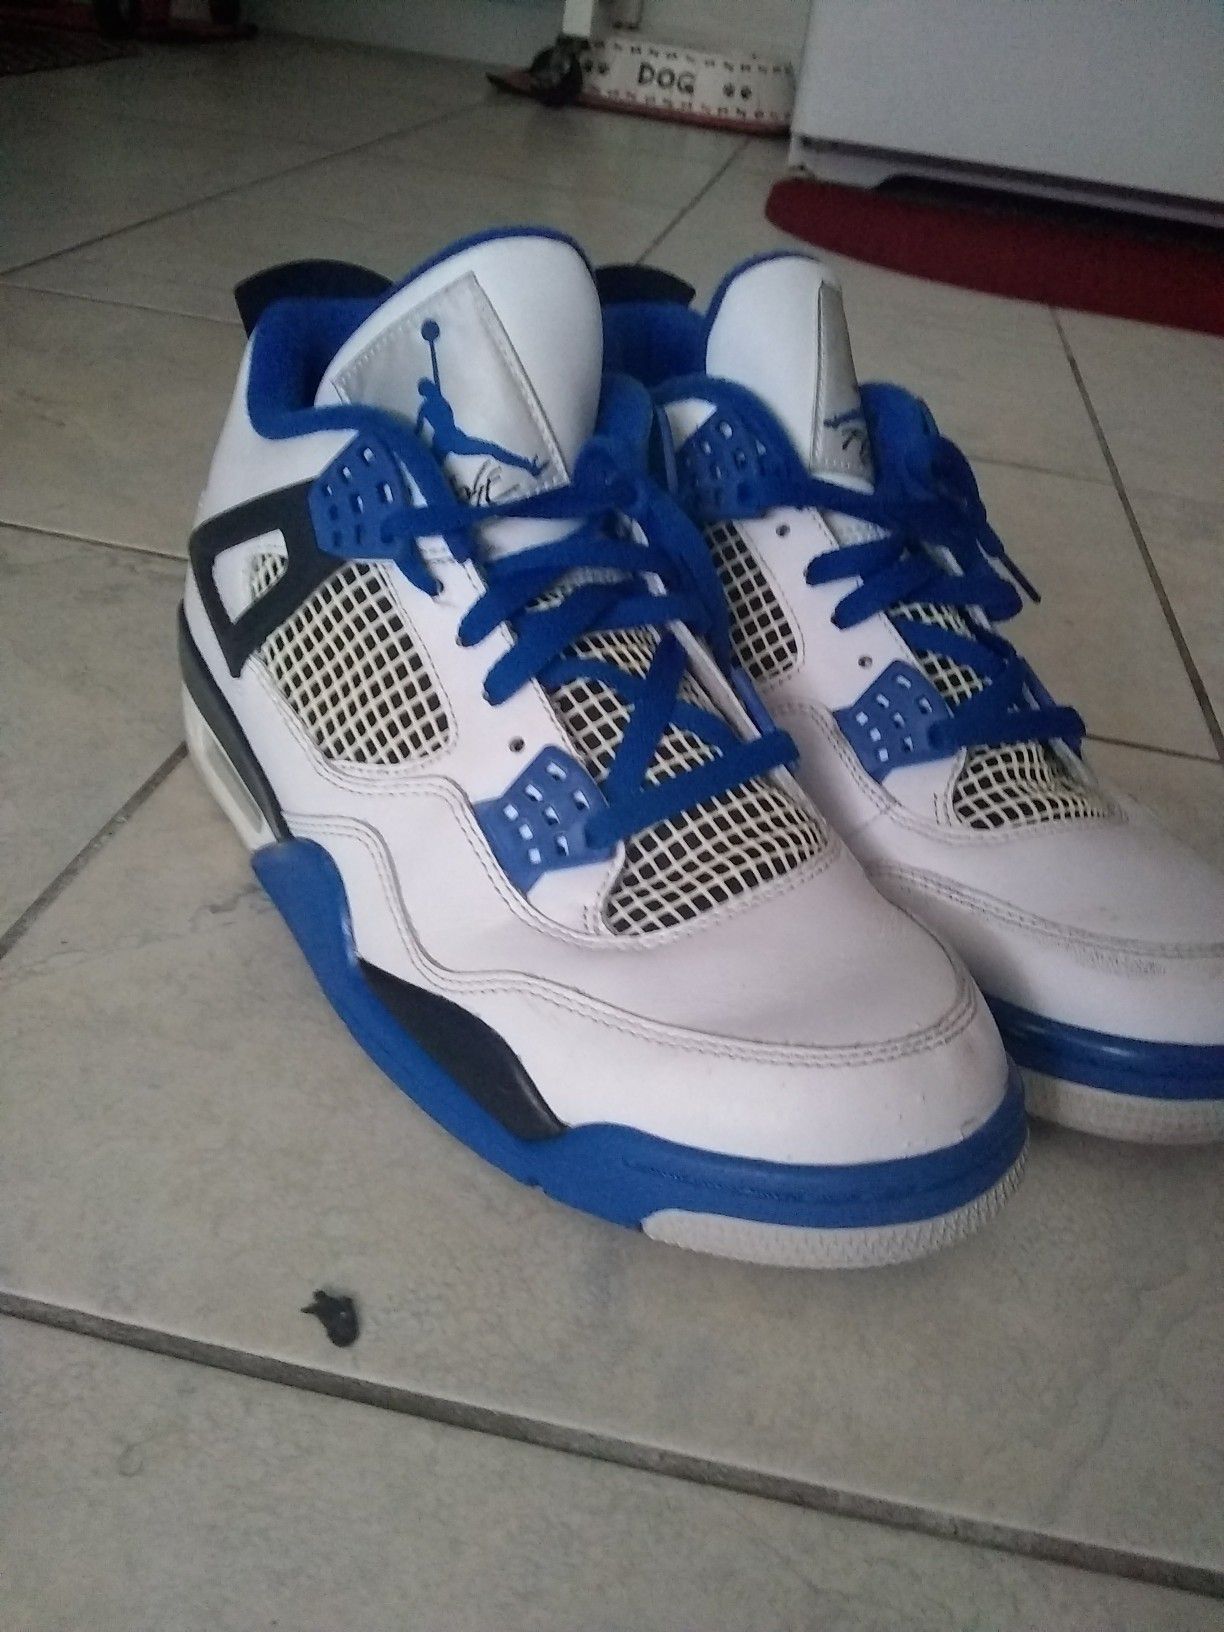 Blue and white Jordans